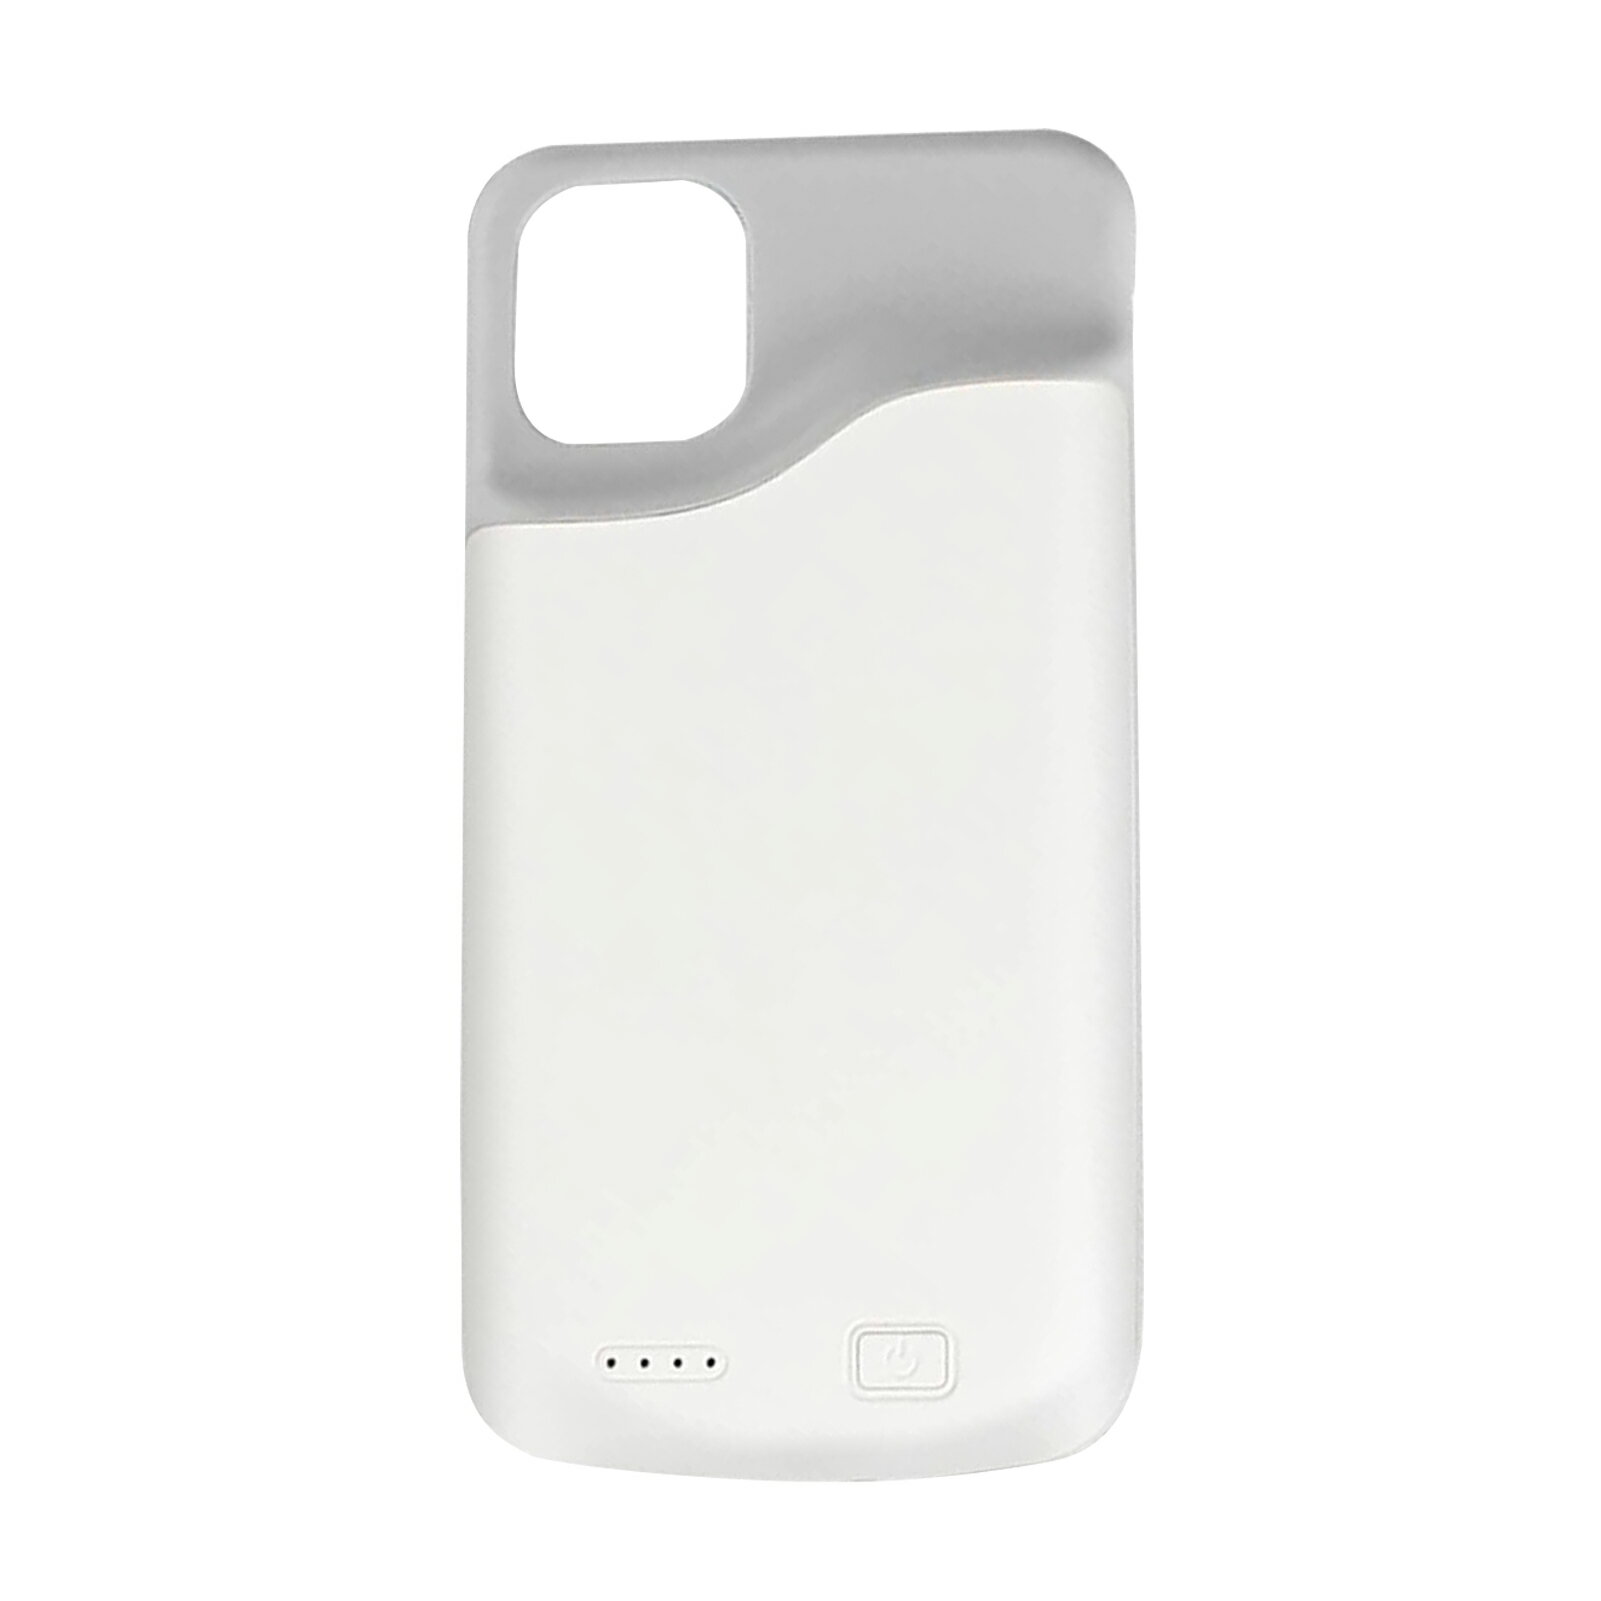 ケース型バッテリー iPhone 11 Pro Max 対応 薄型バッテリーケース 6000mAh シリコン ケース 耐衝撃 バッテリー内蔵ケース 充電ケース 急速充電 携帯充電器 旅行用 ホワイト 保護ケース